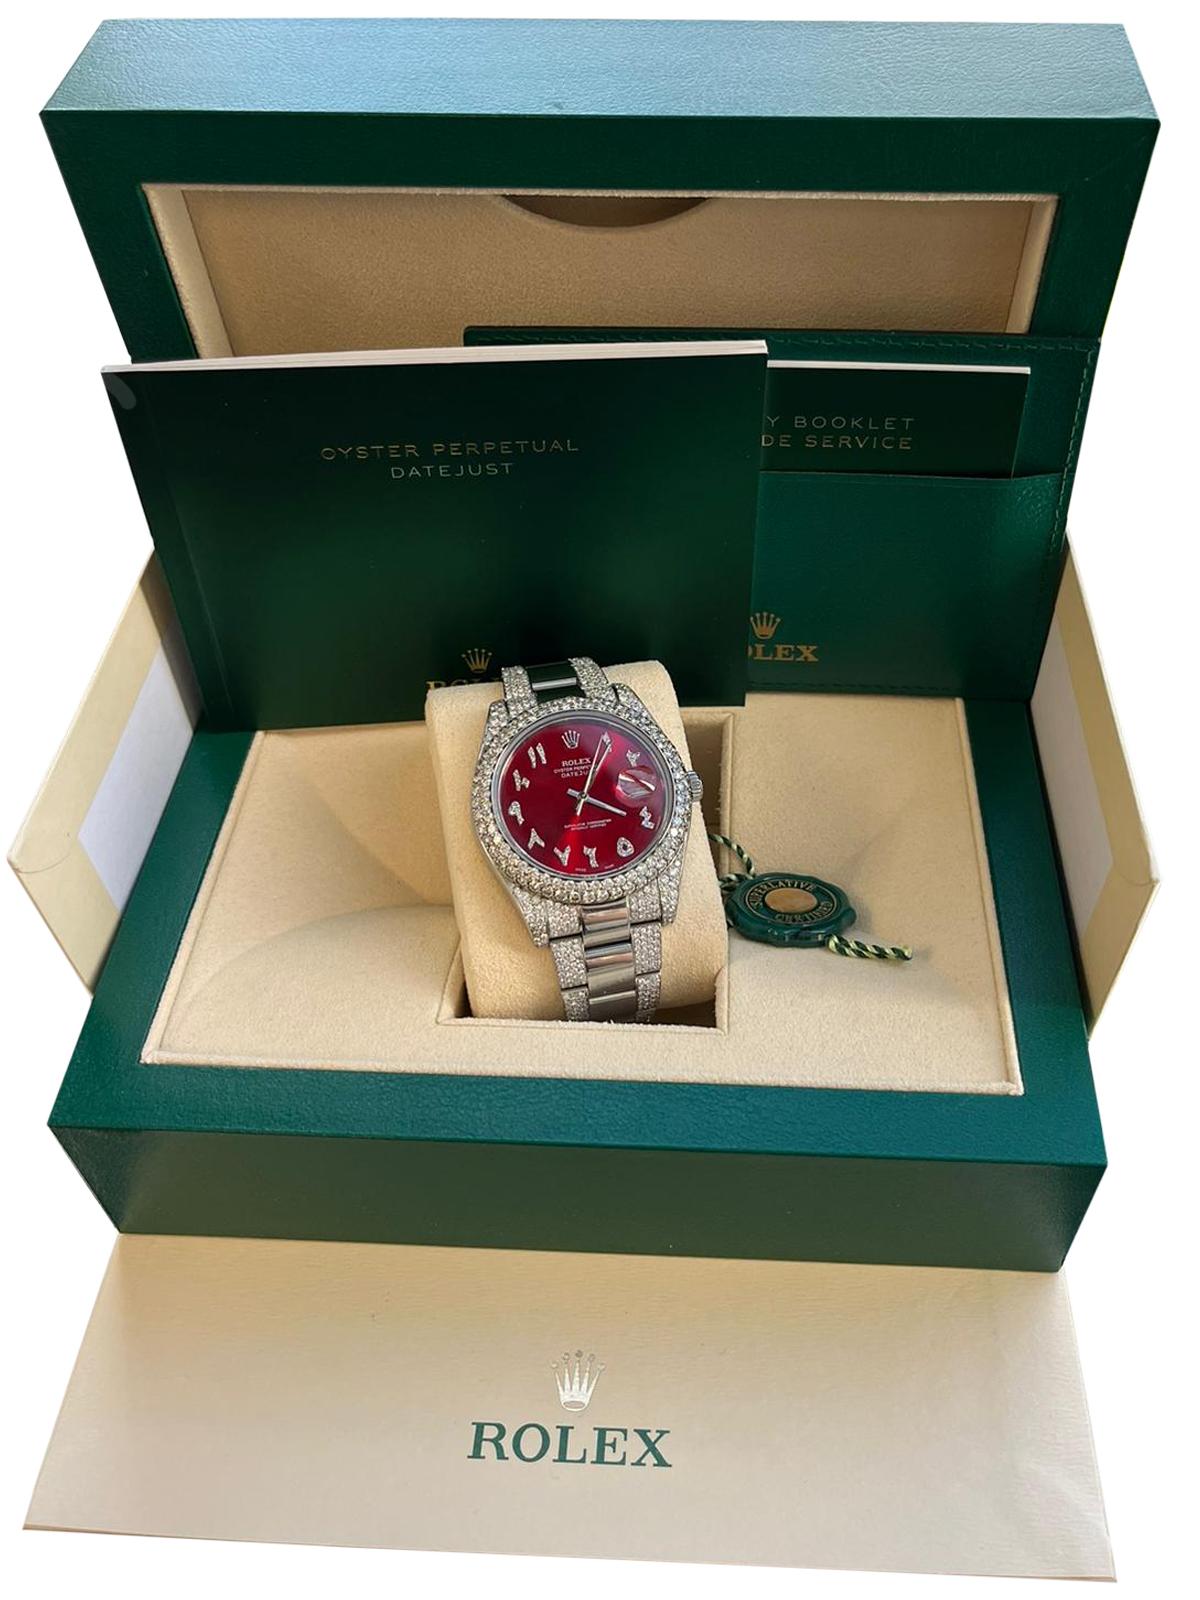 Die Rolex 116334 Datejust II 41mm mit Aftermarket Diamond Red Arabic Dial Watch ist ein markanter Zeitmesser mit Eleganz und Raffinesse. Mit ihrer 2,5ctw Aftermarket-Diamantlünette und dem fesselnden roten arabischen Zifferblatt mit